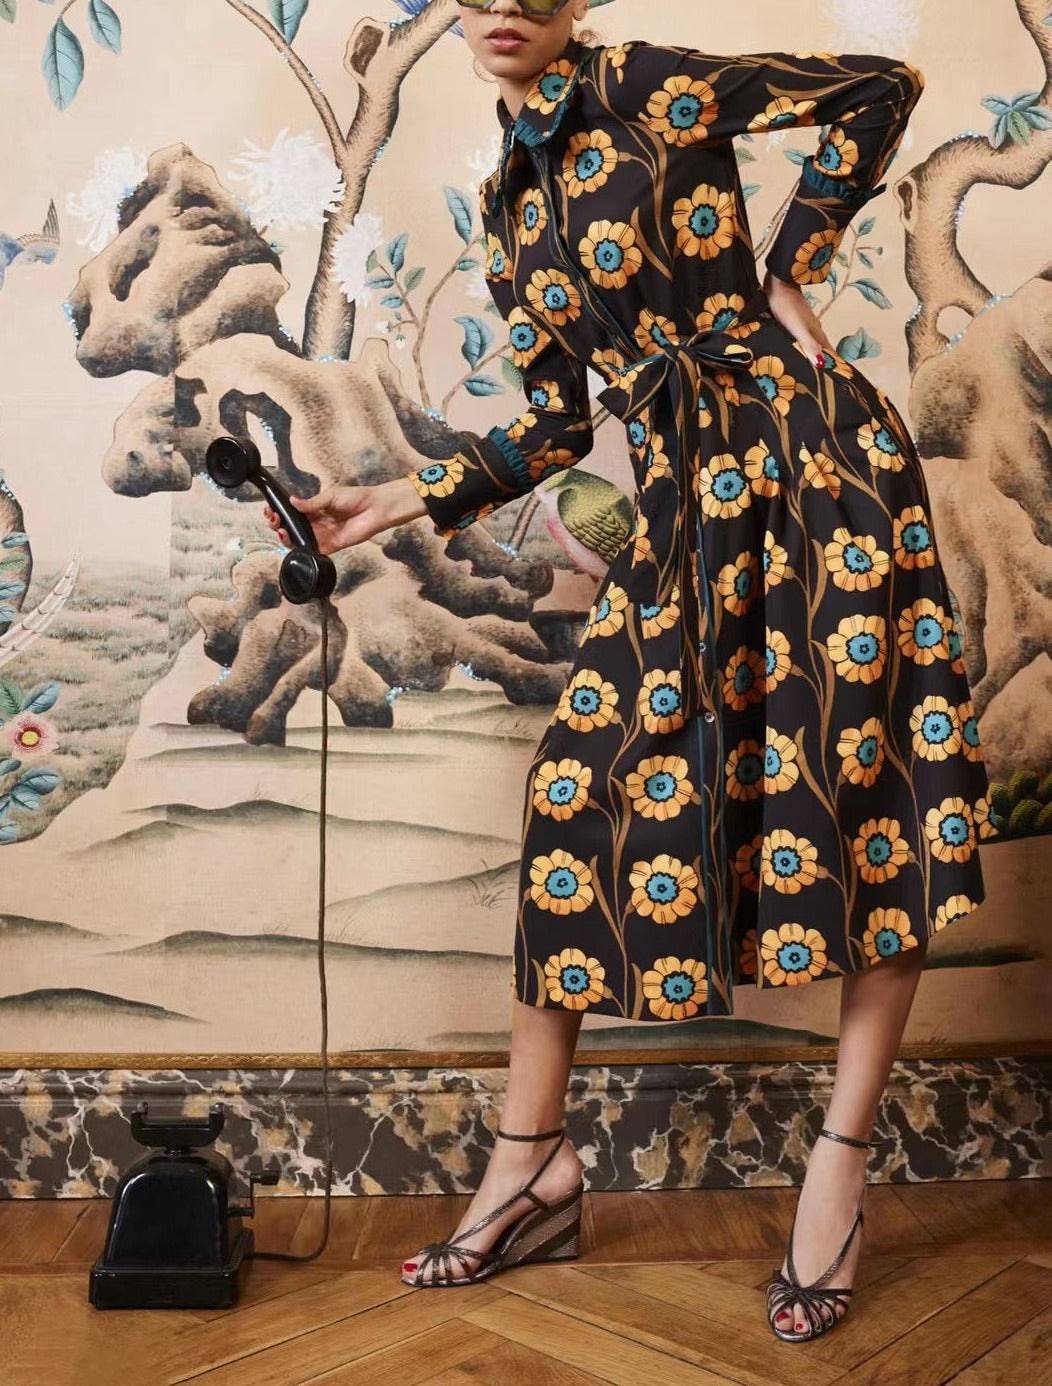 Esperanza Spliced Multi-color Printed Dress - Hot fashionista